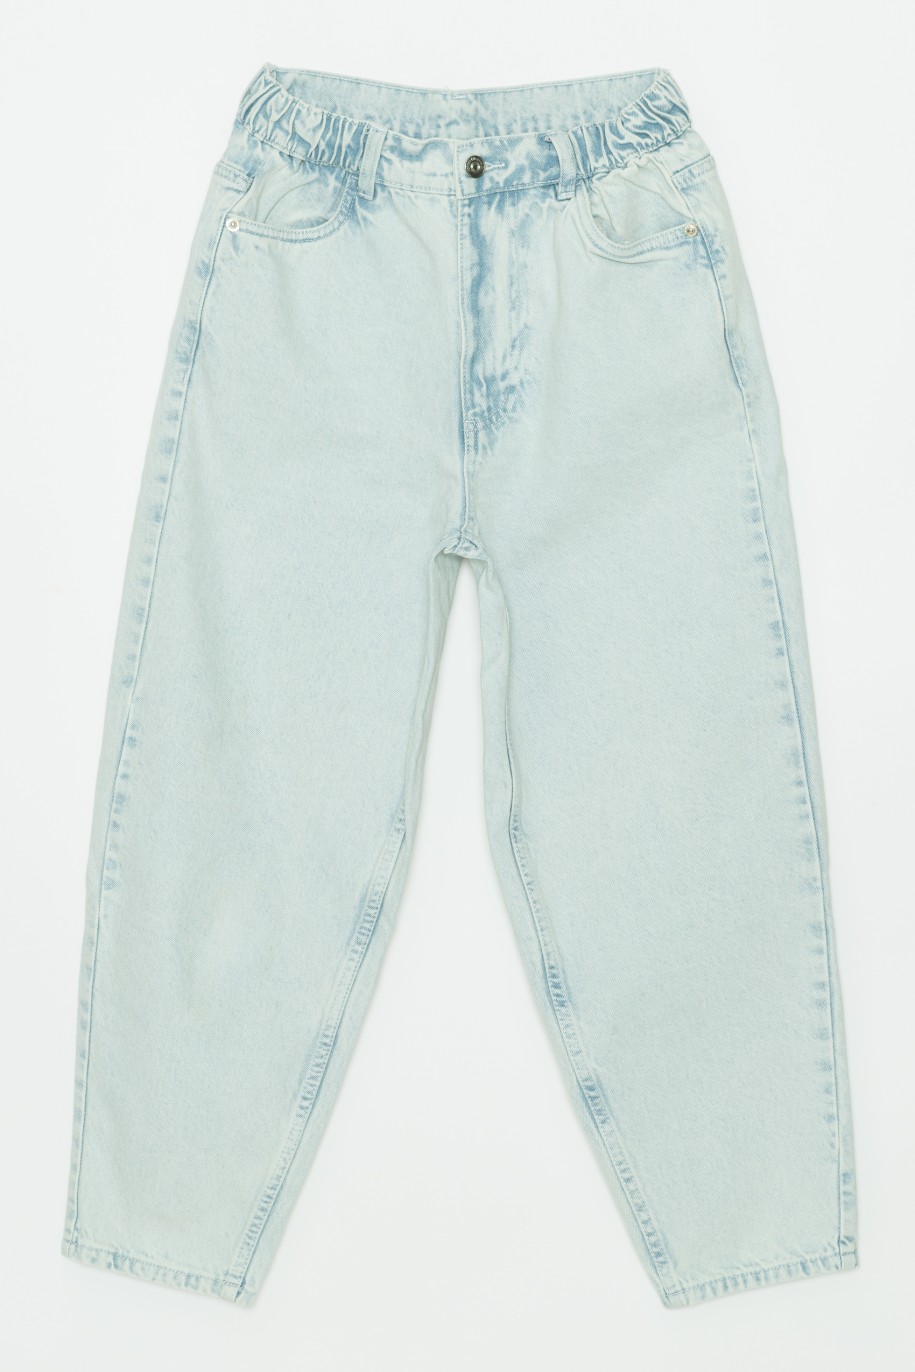 Jeansowe spodnie dla dziewczyny typu slouchy - 32419